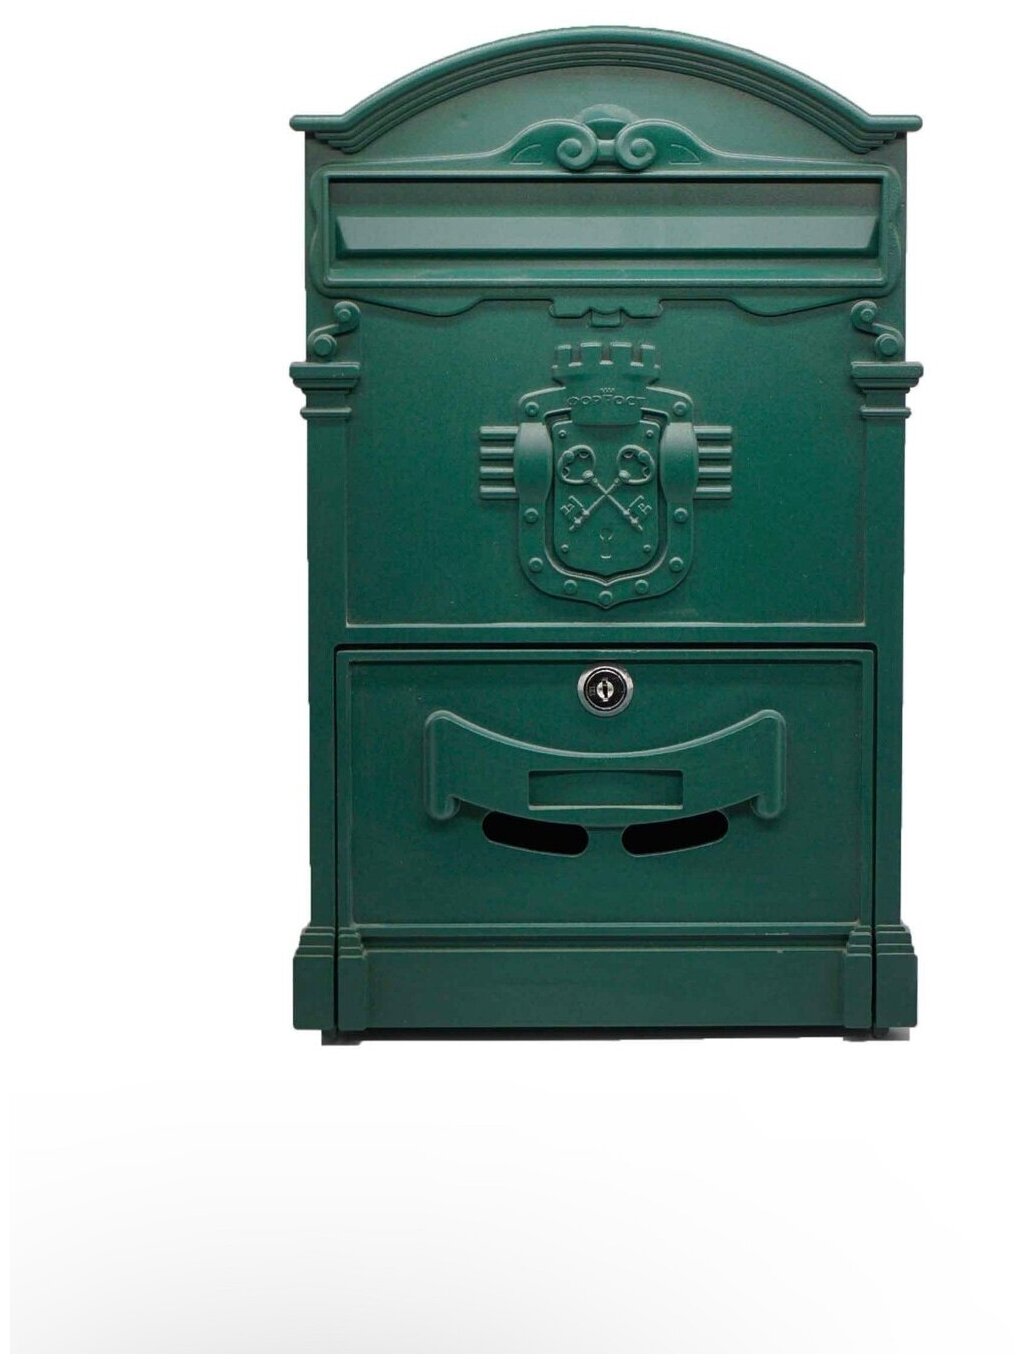 Почтовый ящик "Ключики" цвет: зеленый/ почтовый ящик металлический/ почтовый ящик с замком/ ящик почтовый/ почтовый ящик с замком уличный - фотография № 3